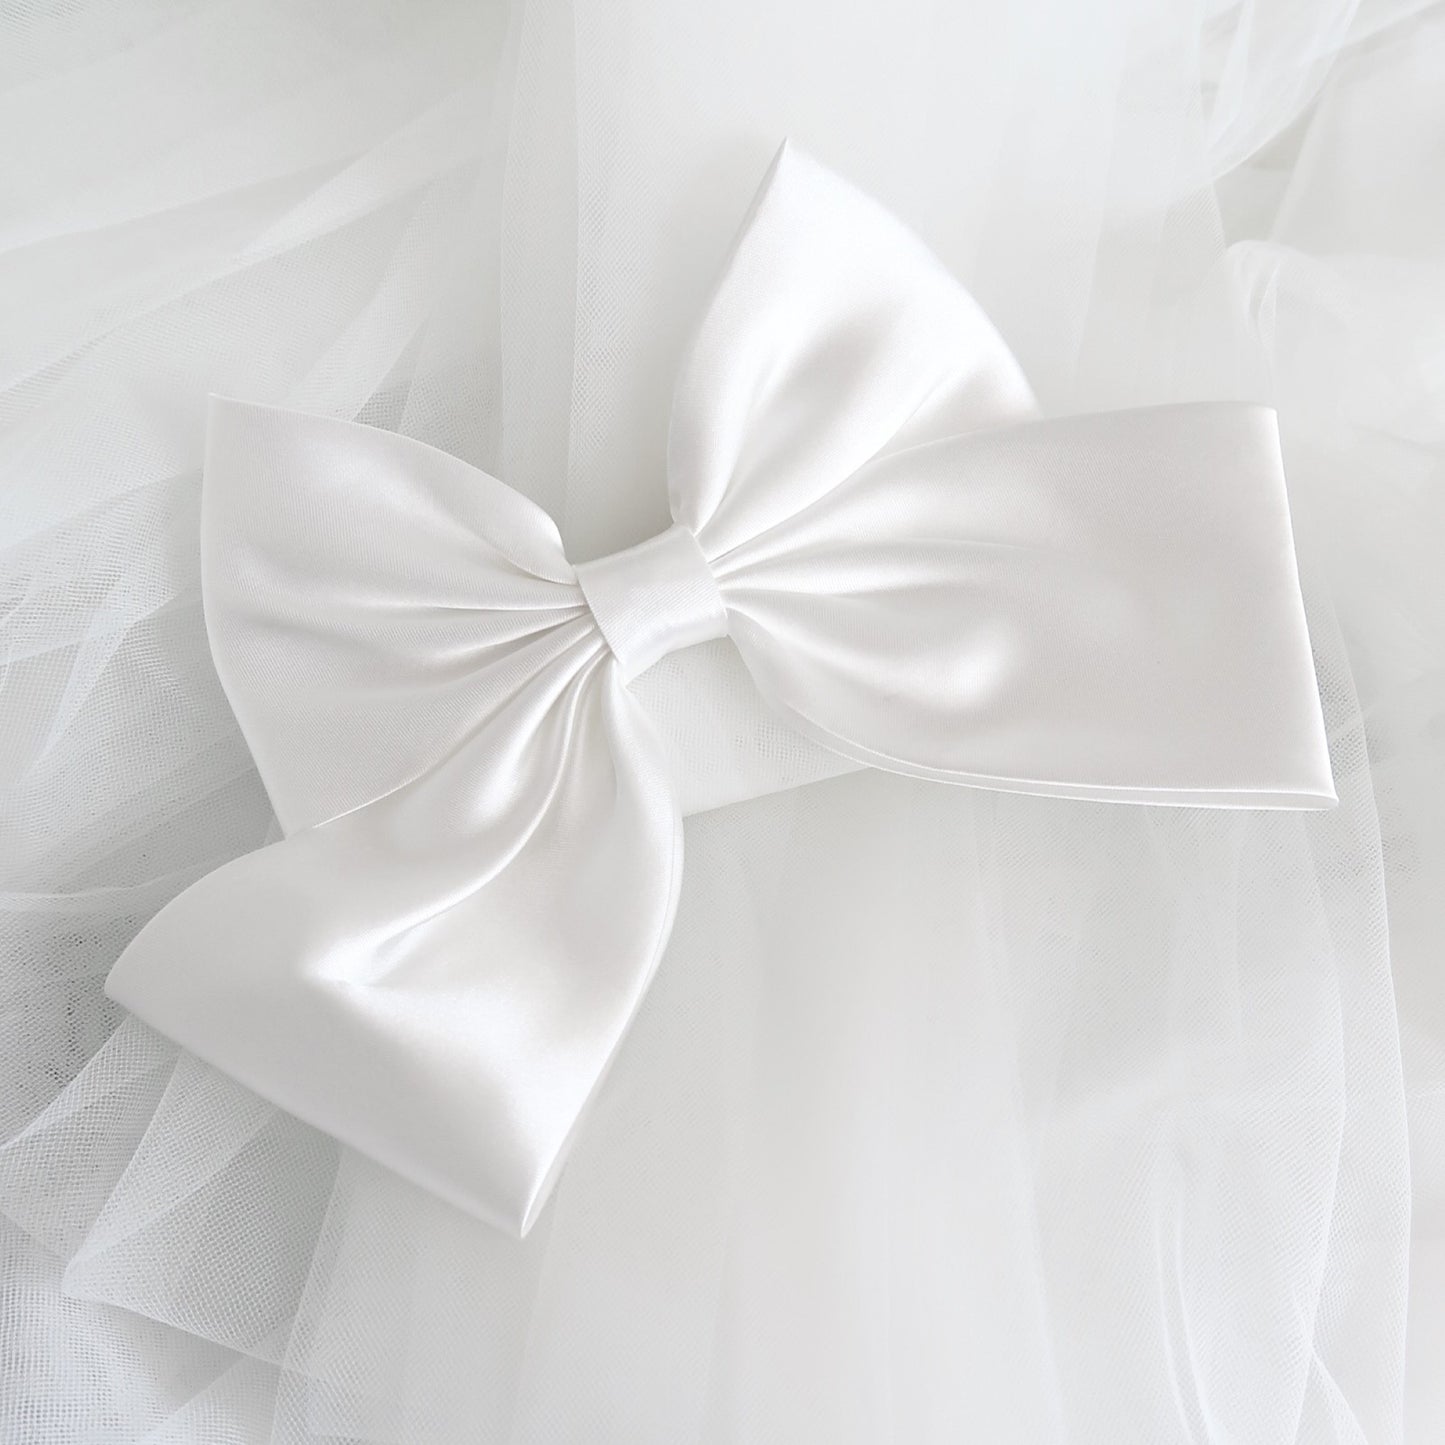 satin bridal bow, with waist lenght veil. 80 cm